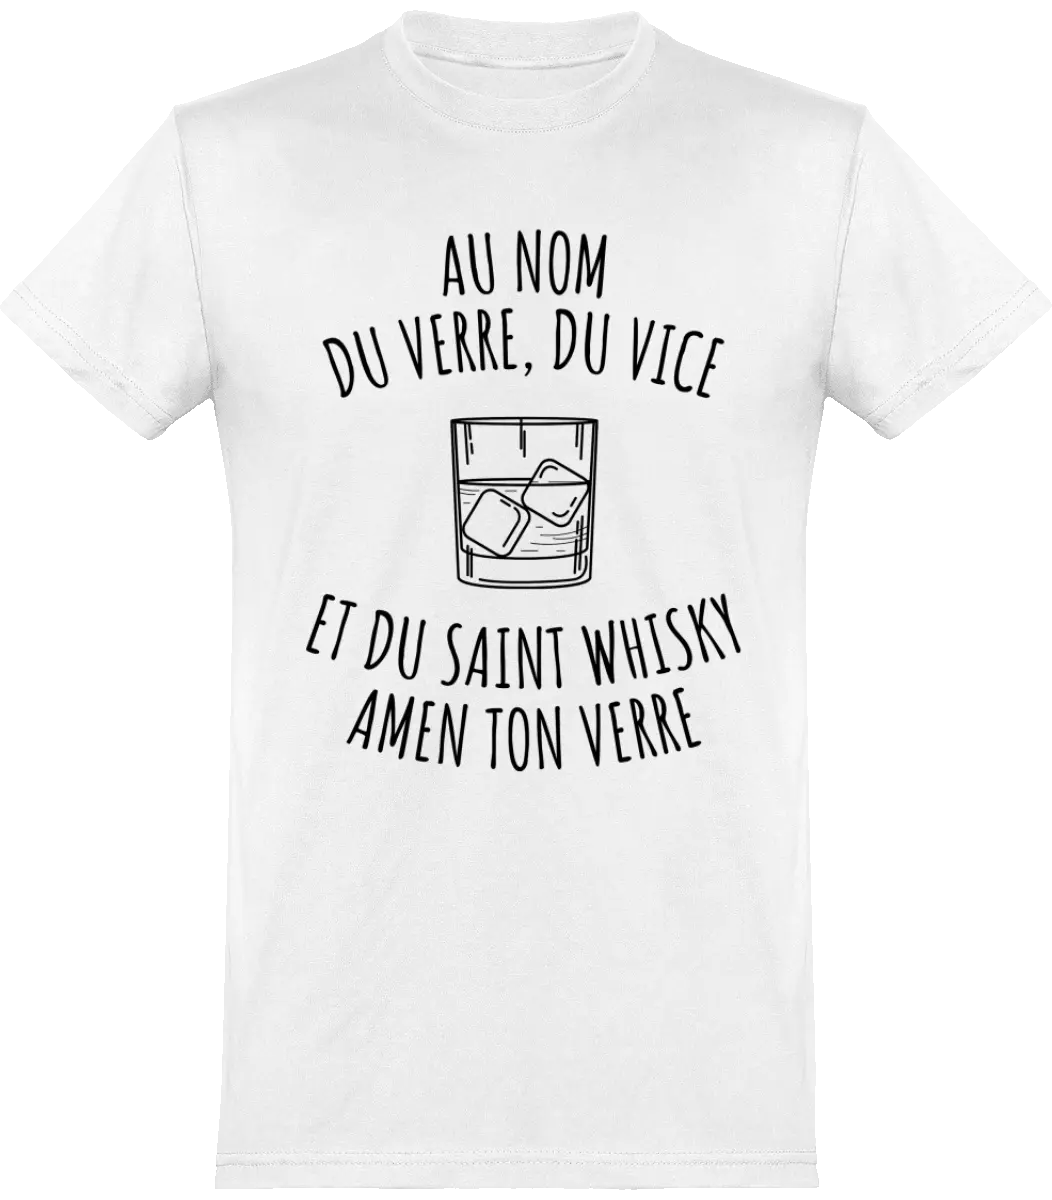 T-shirt Whisky "Au nom du verre, du vice et du saint whisky amen ton verre" | Mixte - French Humour